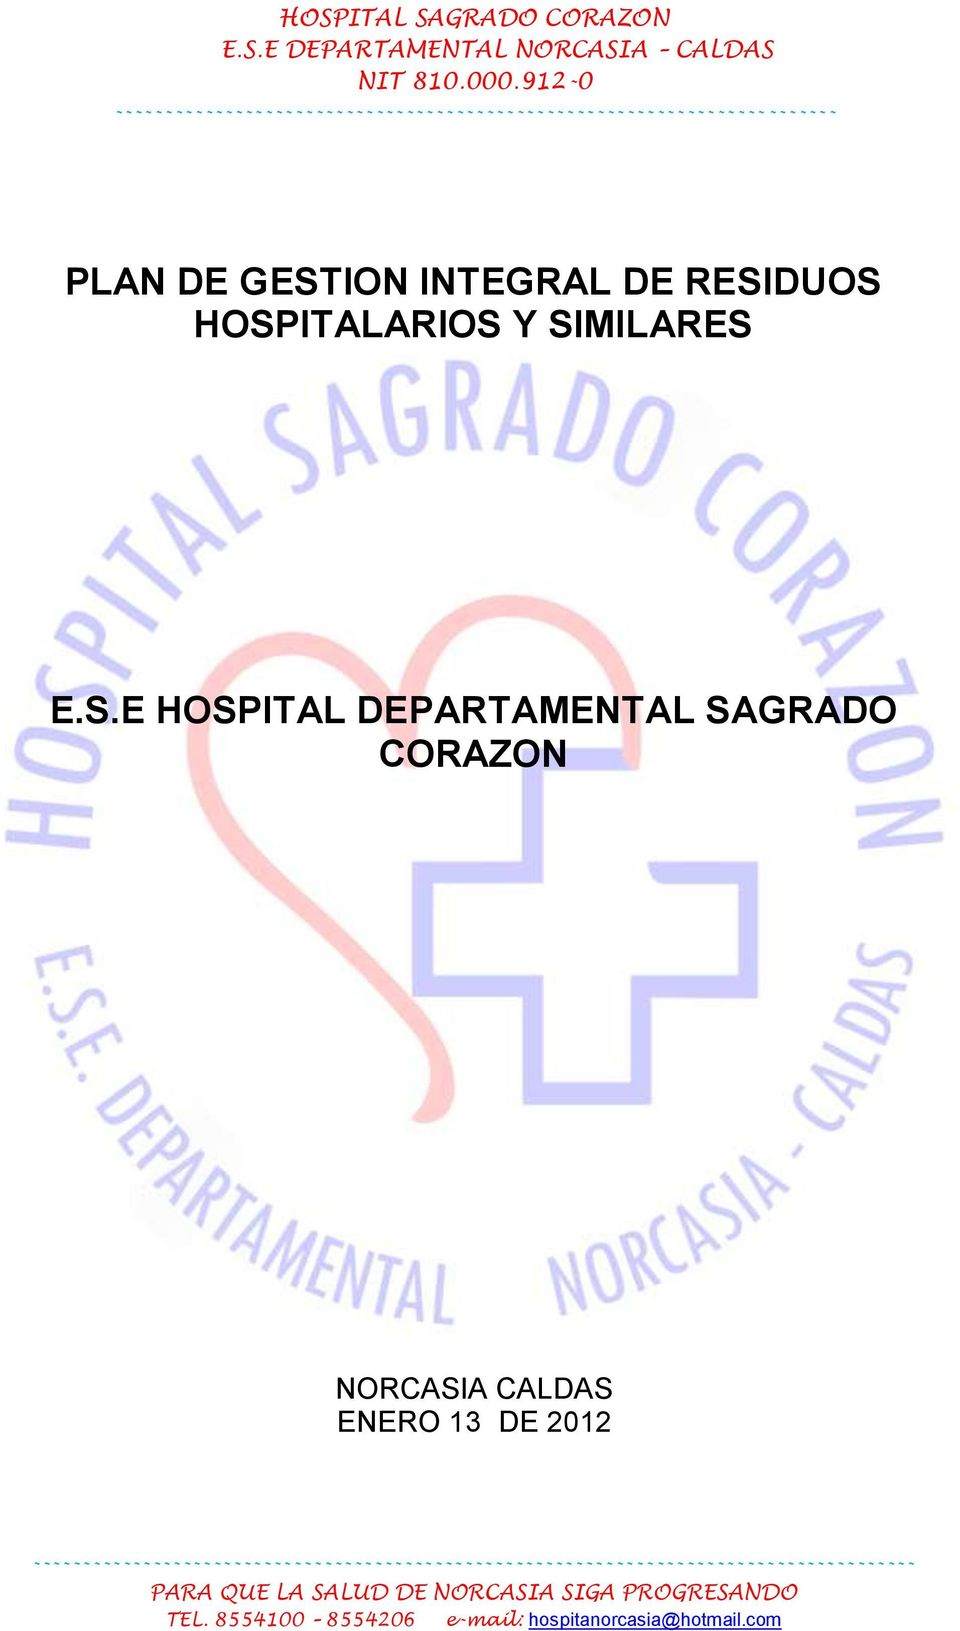 E.S.E HOSPITAL DEPARTAMENTAL